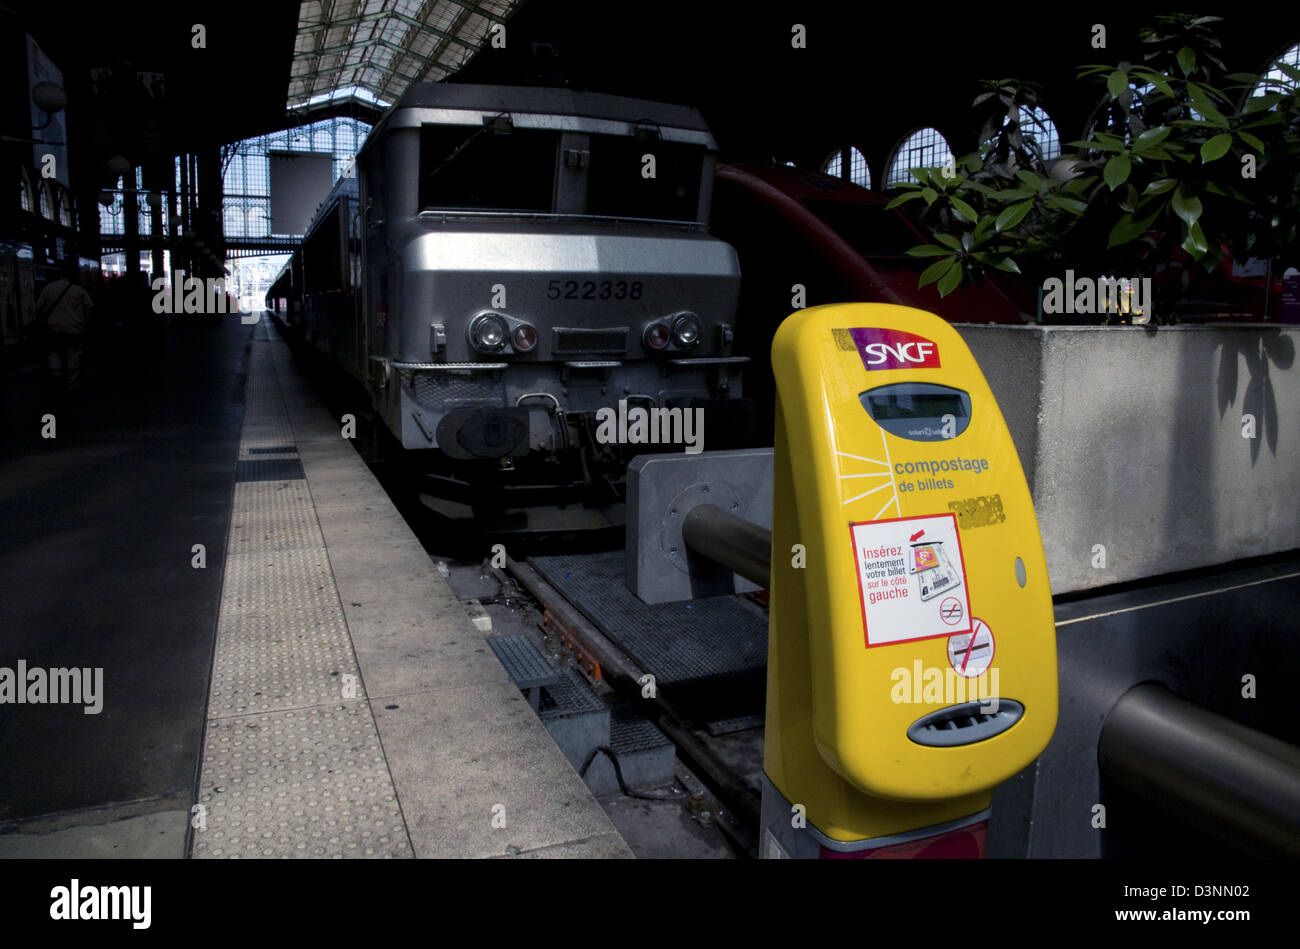 Compostage de palanquillas máquina,plataformas,la estación Gare du Nord, Paris, Francia Foto de stock